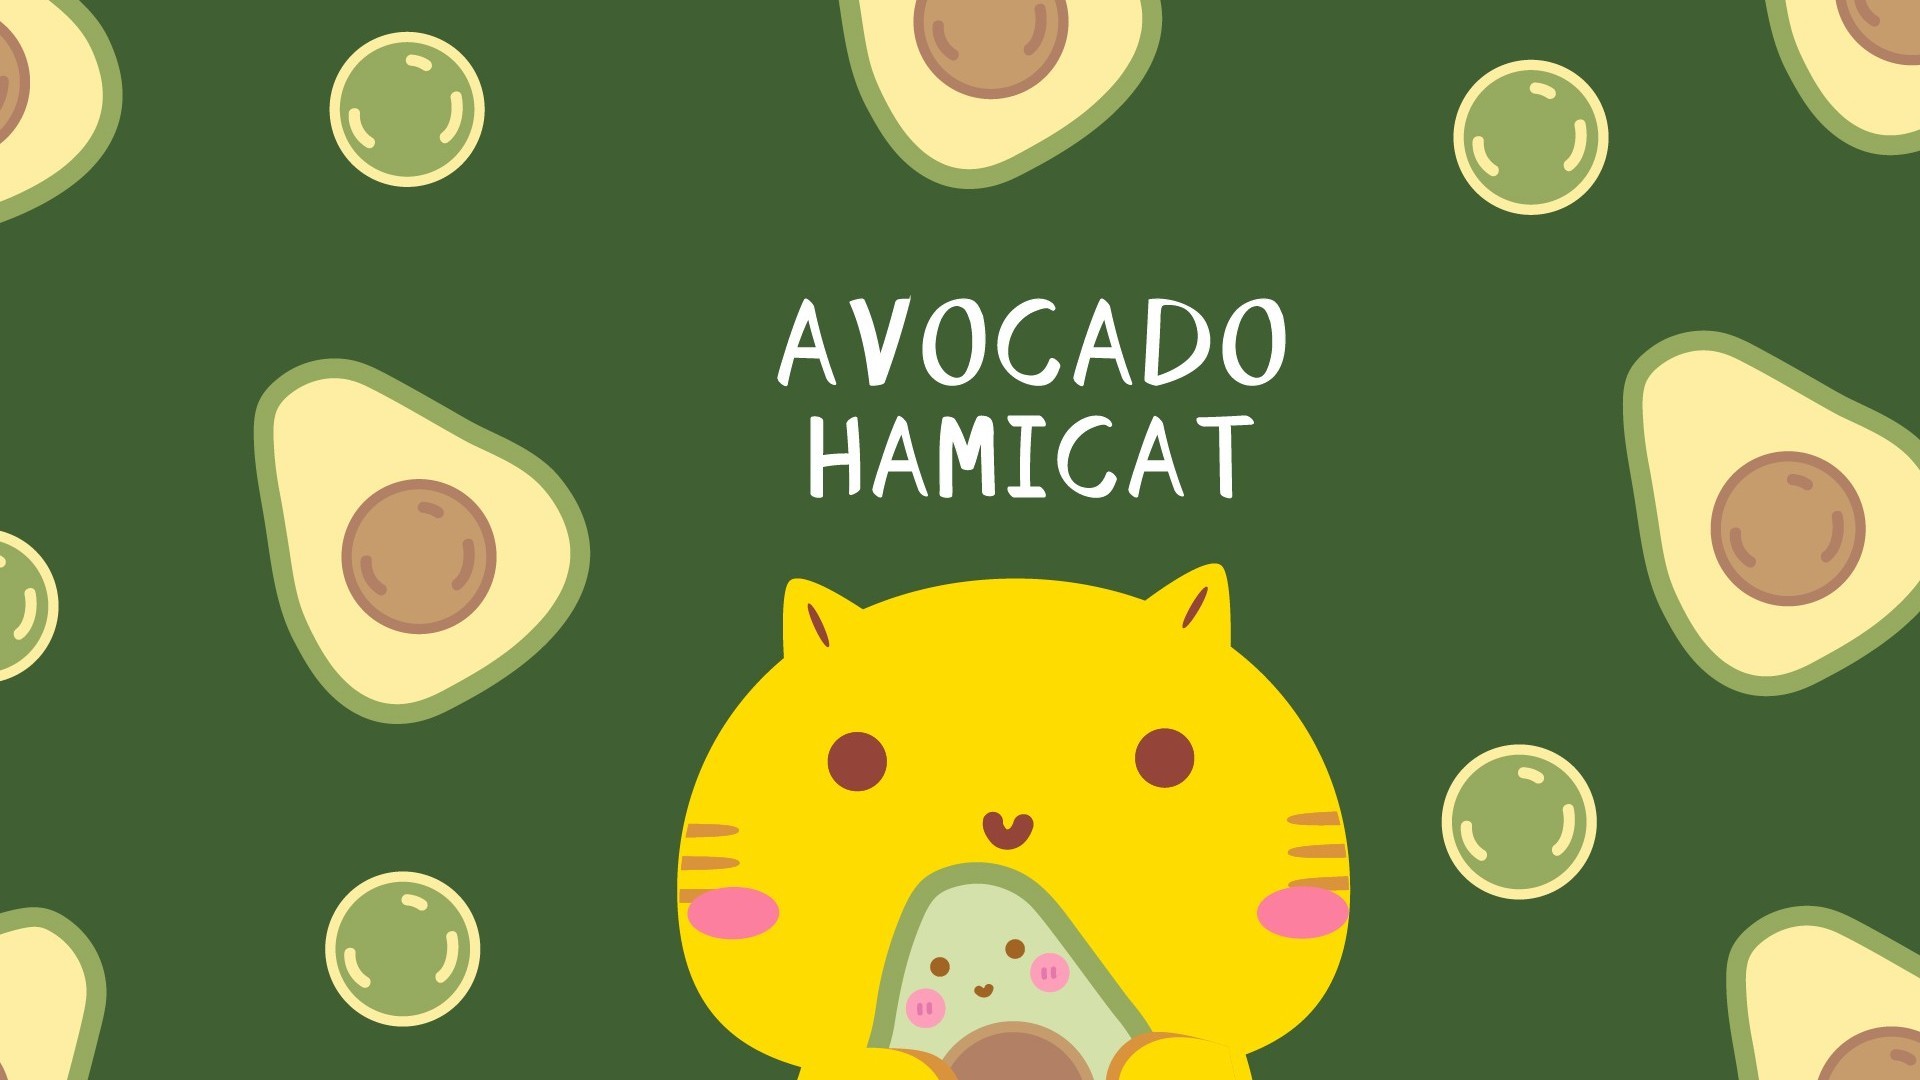 Hamicat哈咪猫牛油果系列卡通图片壁纸